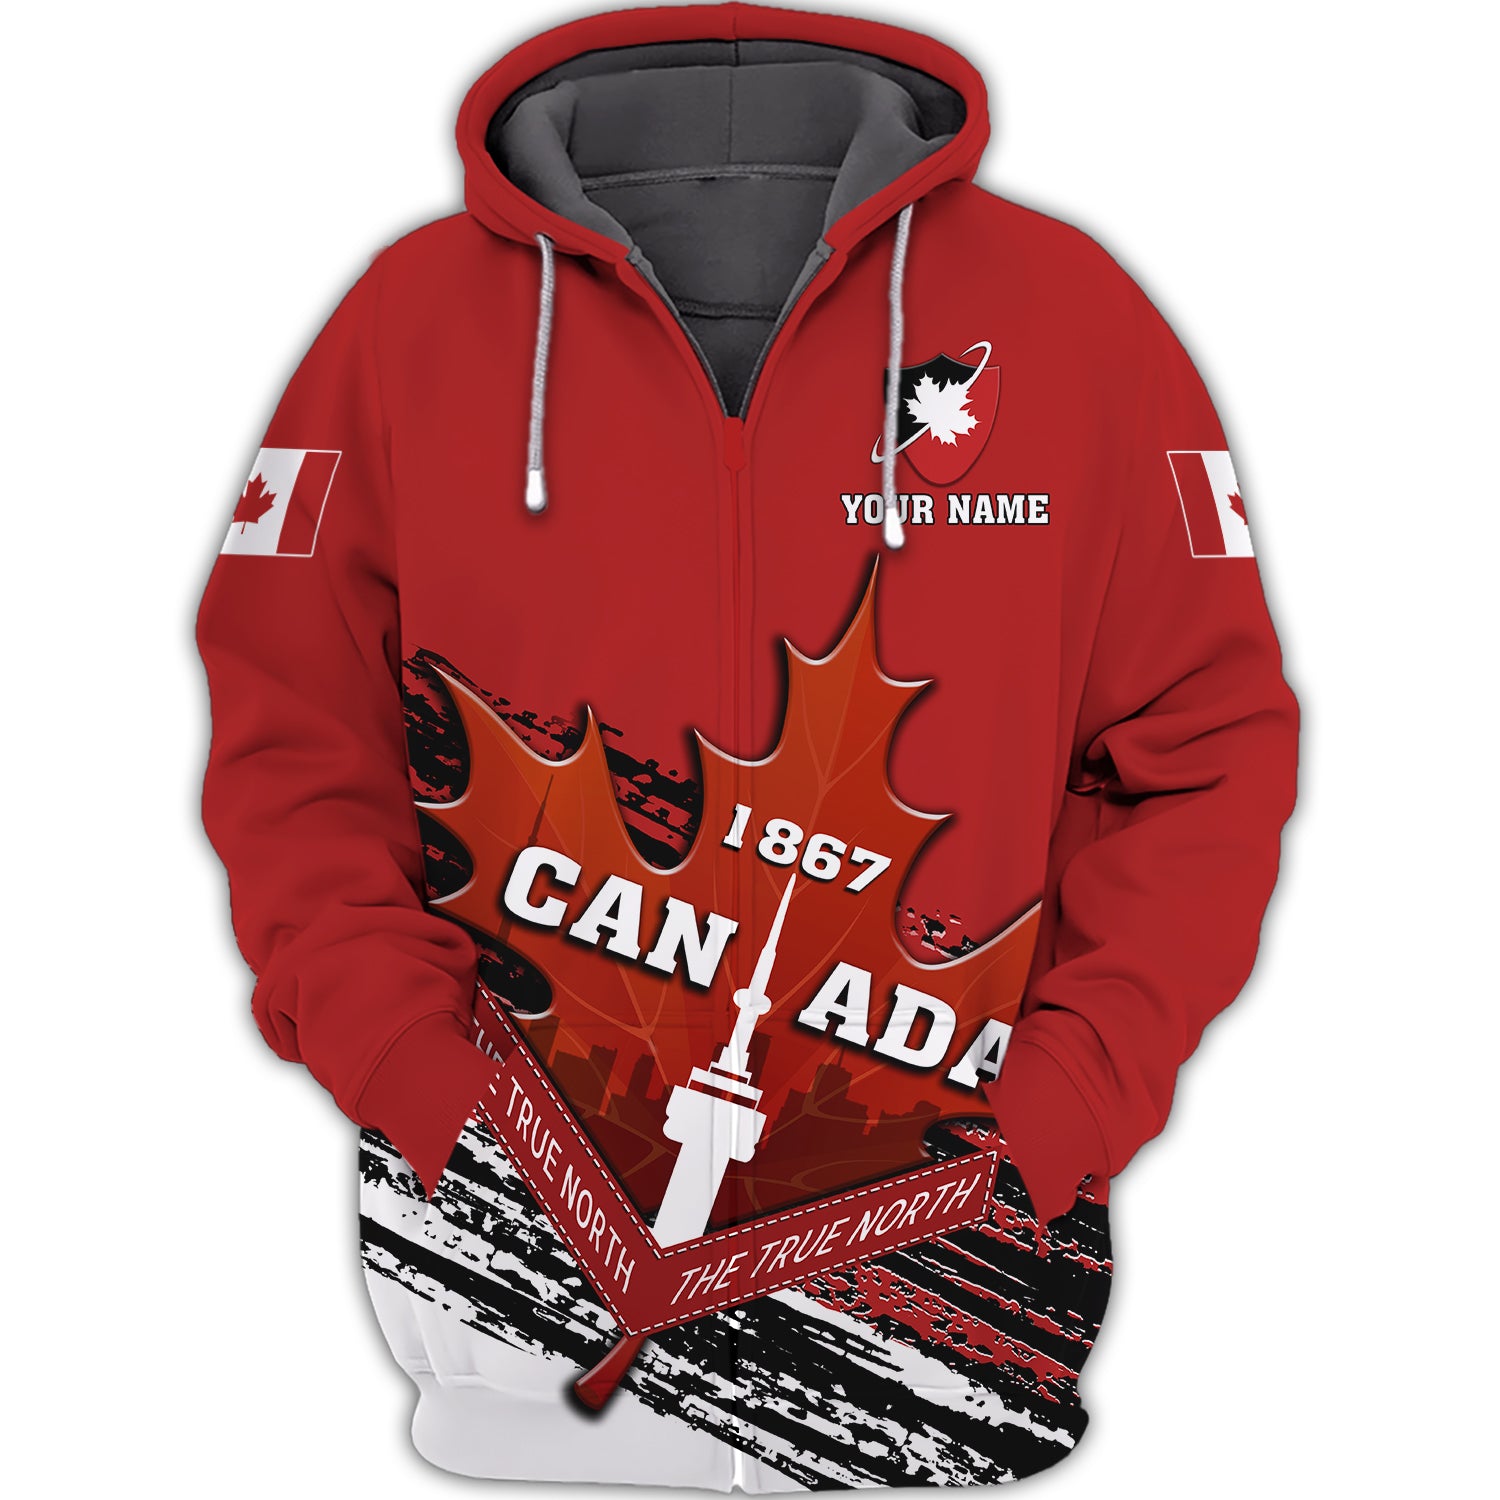 Canada 1867 - Personalized Name 3D Zipper hoodie - Urt96 190